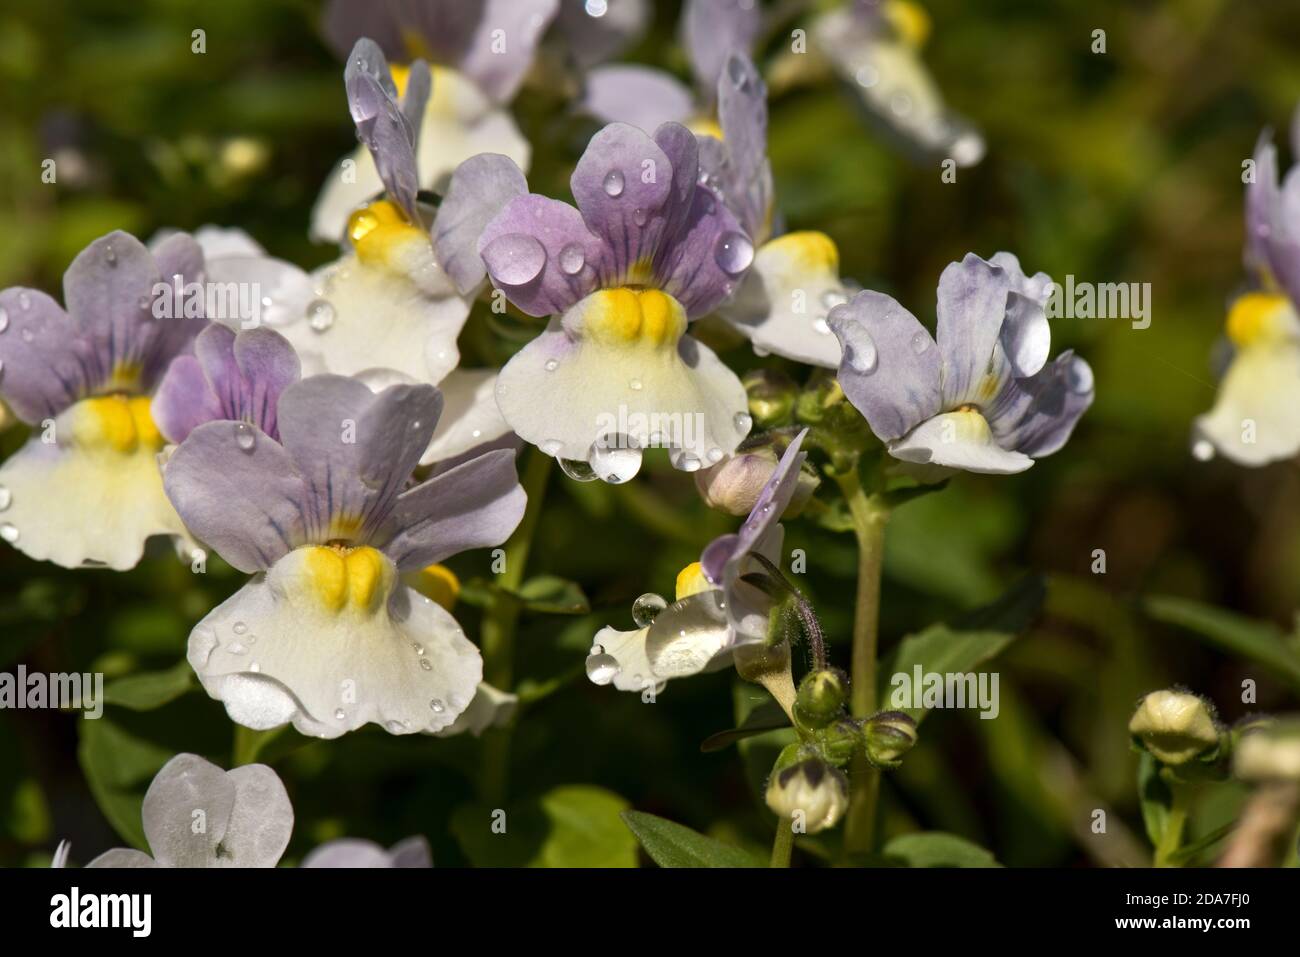 Nemesia 'Easter Bonnet' lilla, fiori gialli e bianchi con gocce di pioggia fortemente profumato con una fragranza di vaniglia, maggio Foto Stock